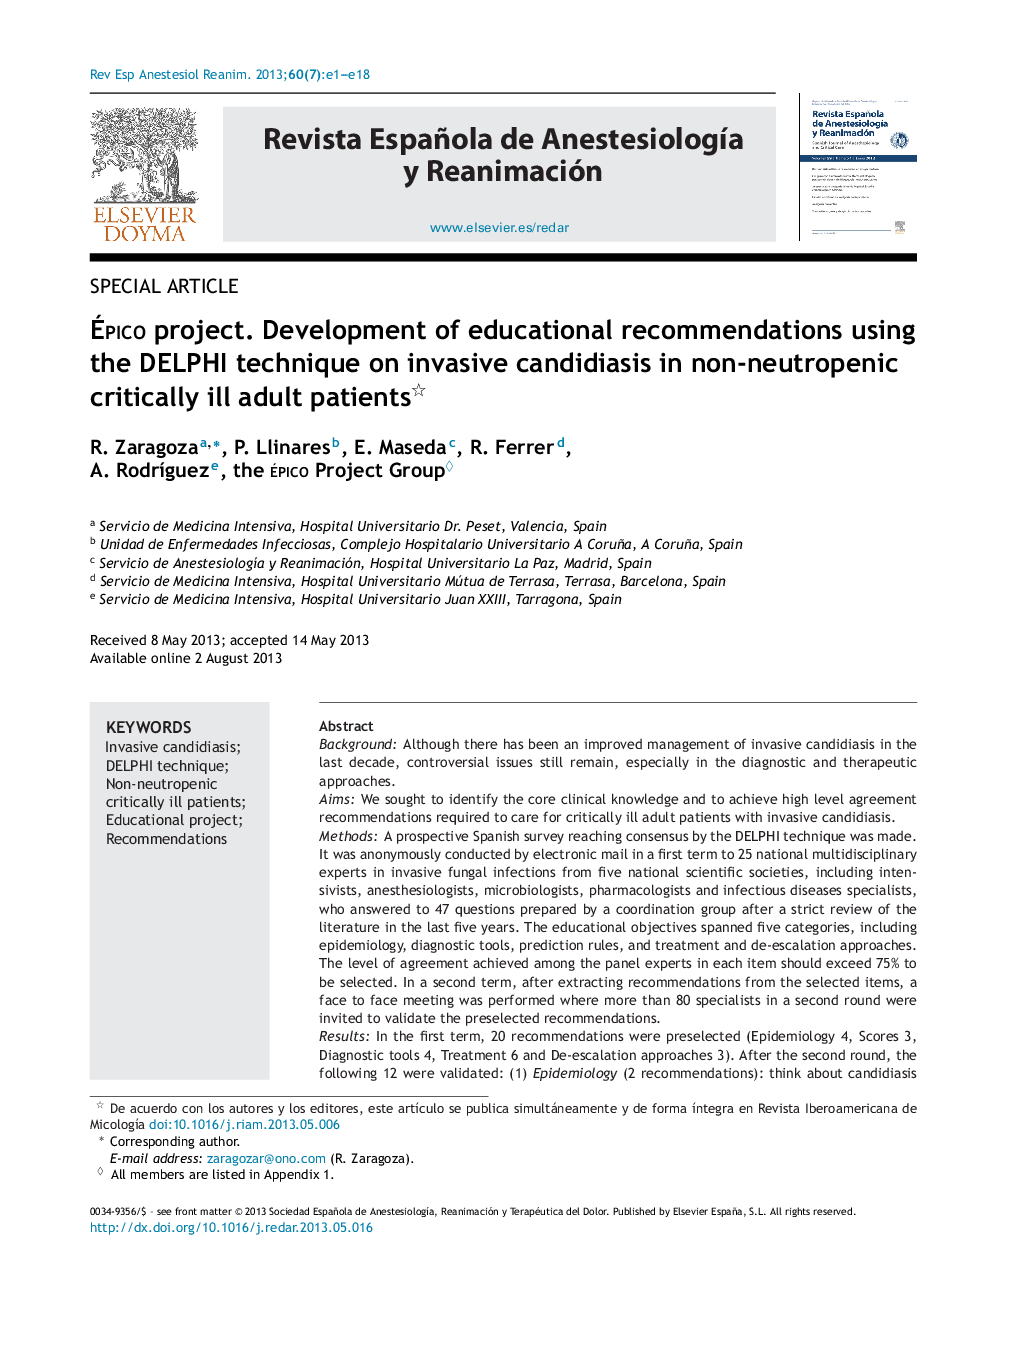 Ãpico project. Development of educational recommendations using the DELPHI technique on invasive candidiasis in non-neutropenic critically ill adult patients